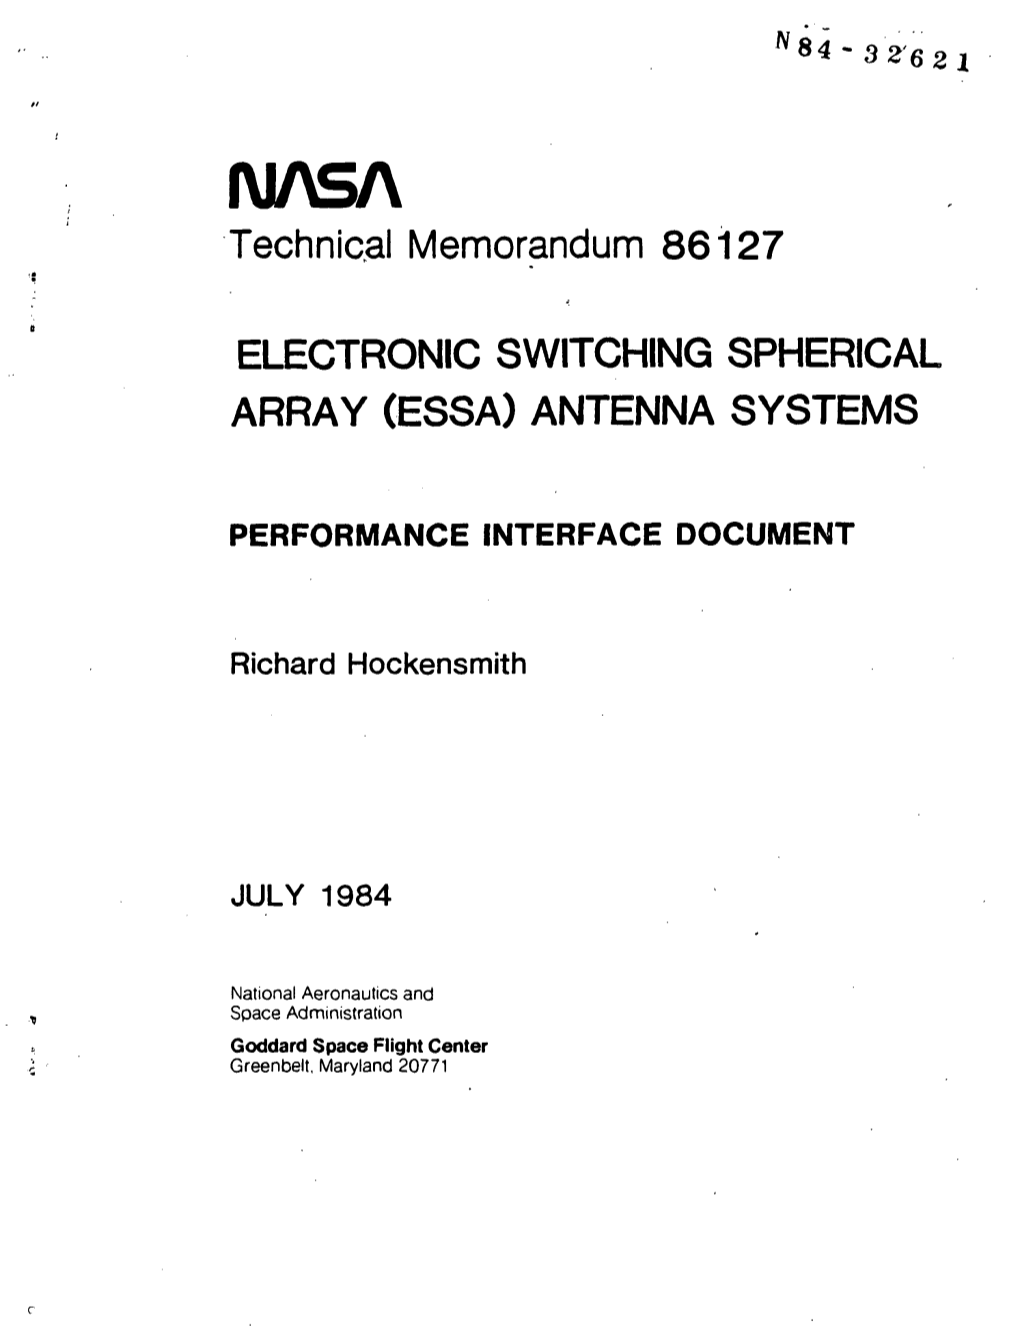 Technical Memorandum 86127